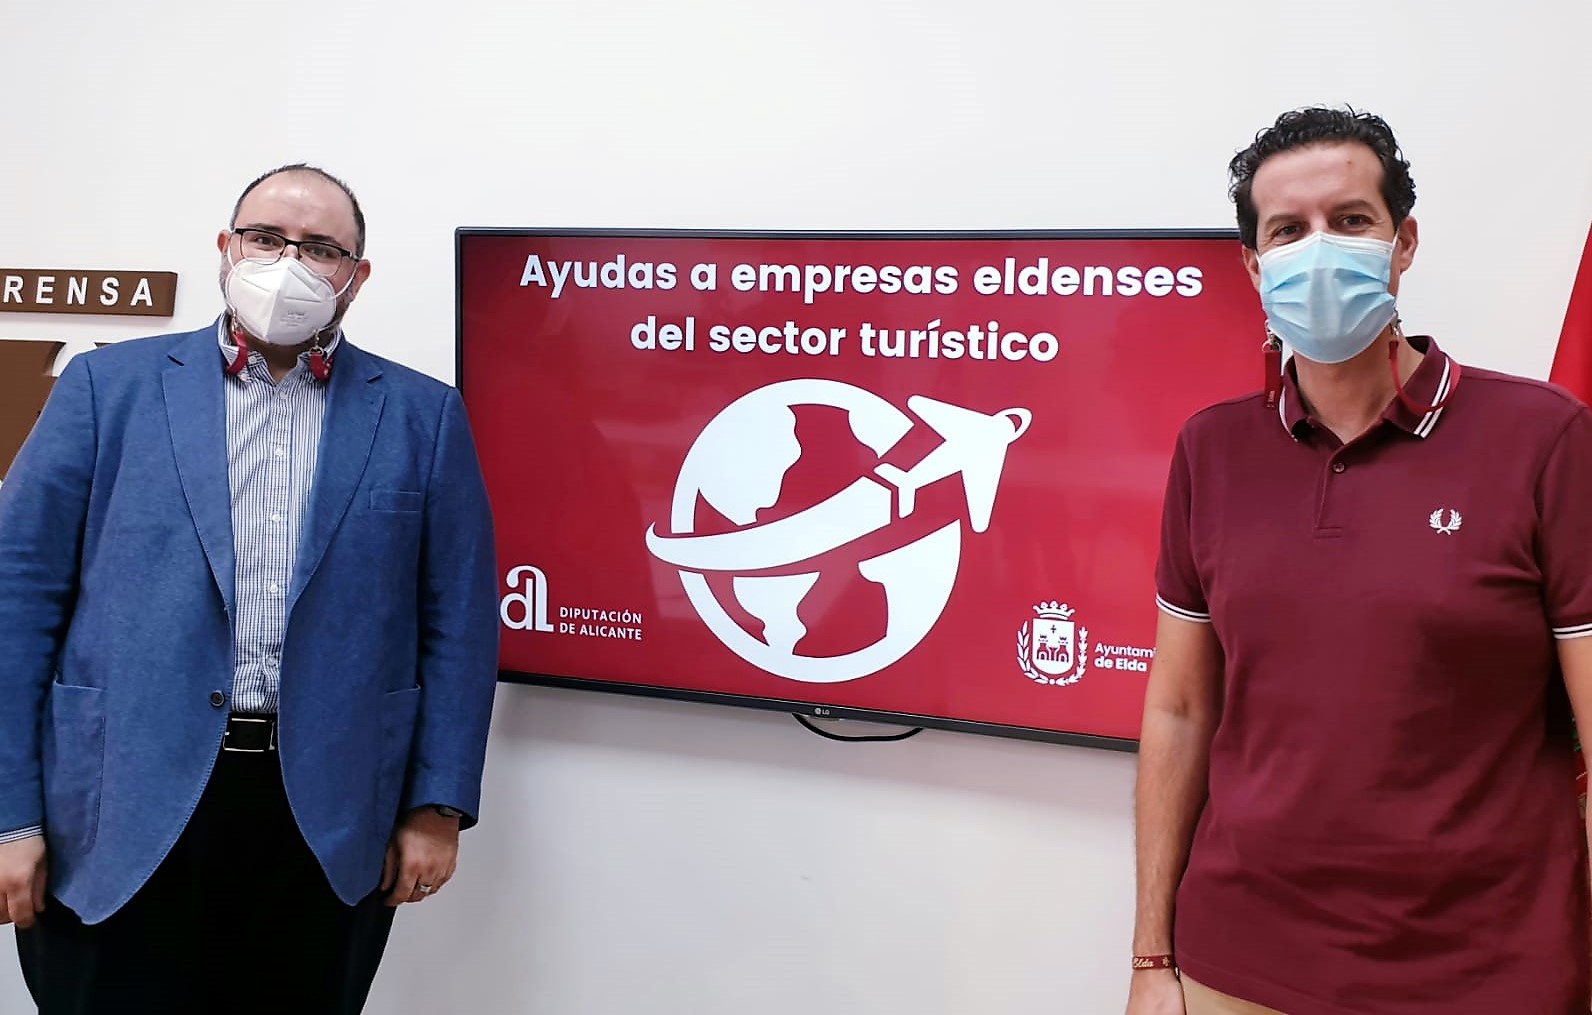 El Ayuntamiento de Elda ofrece ayudas directas a las empresas eldenses del sector turístico para paliar los efectos de la crisis sanitaria